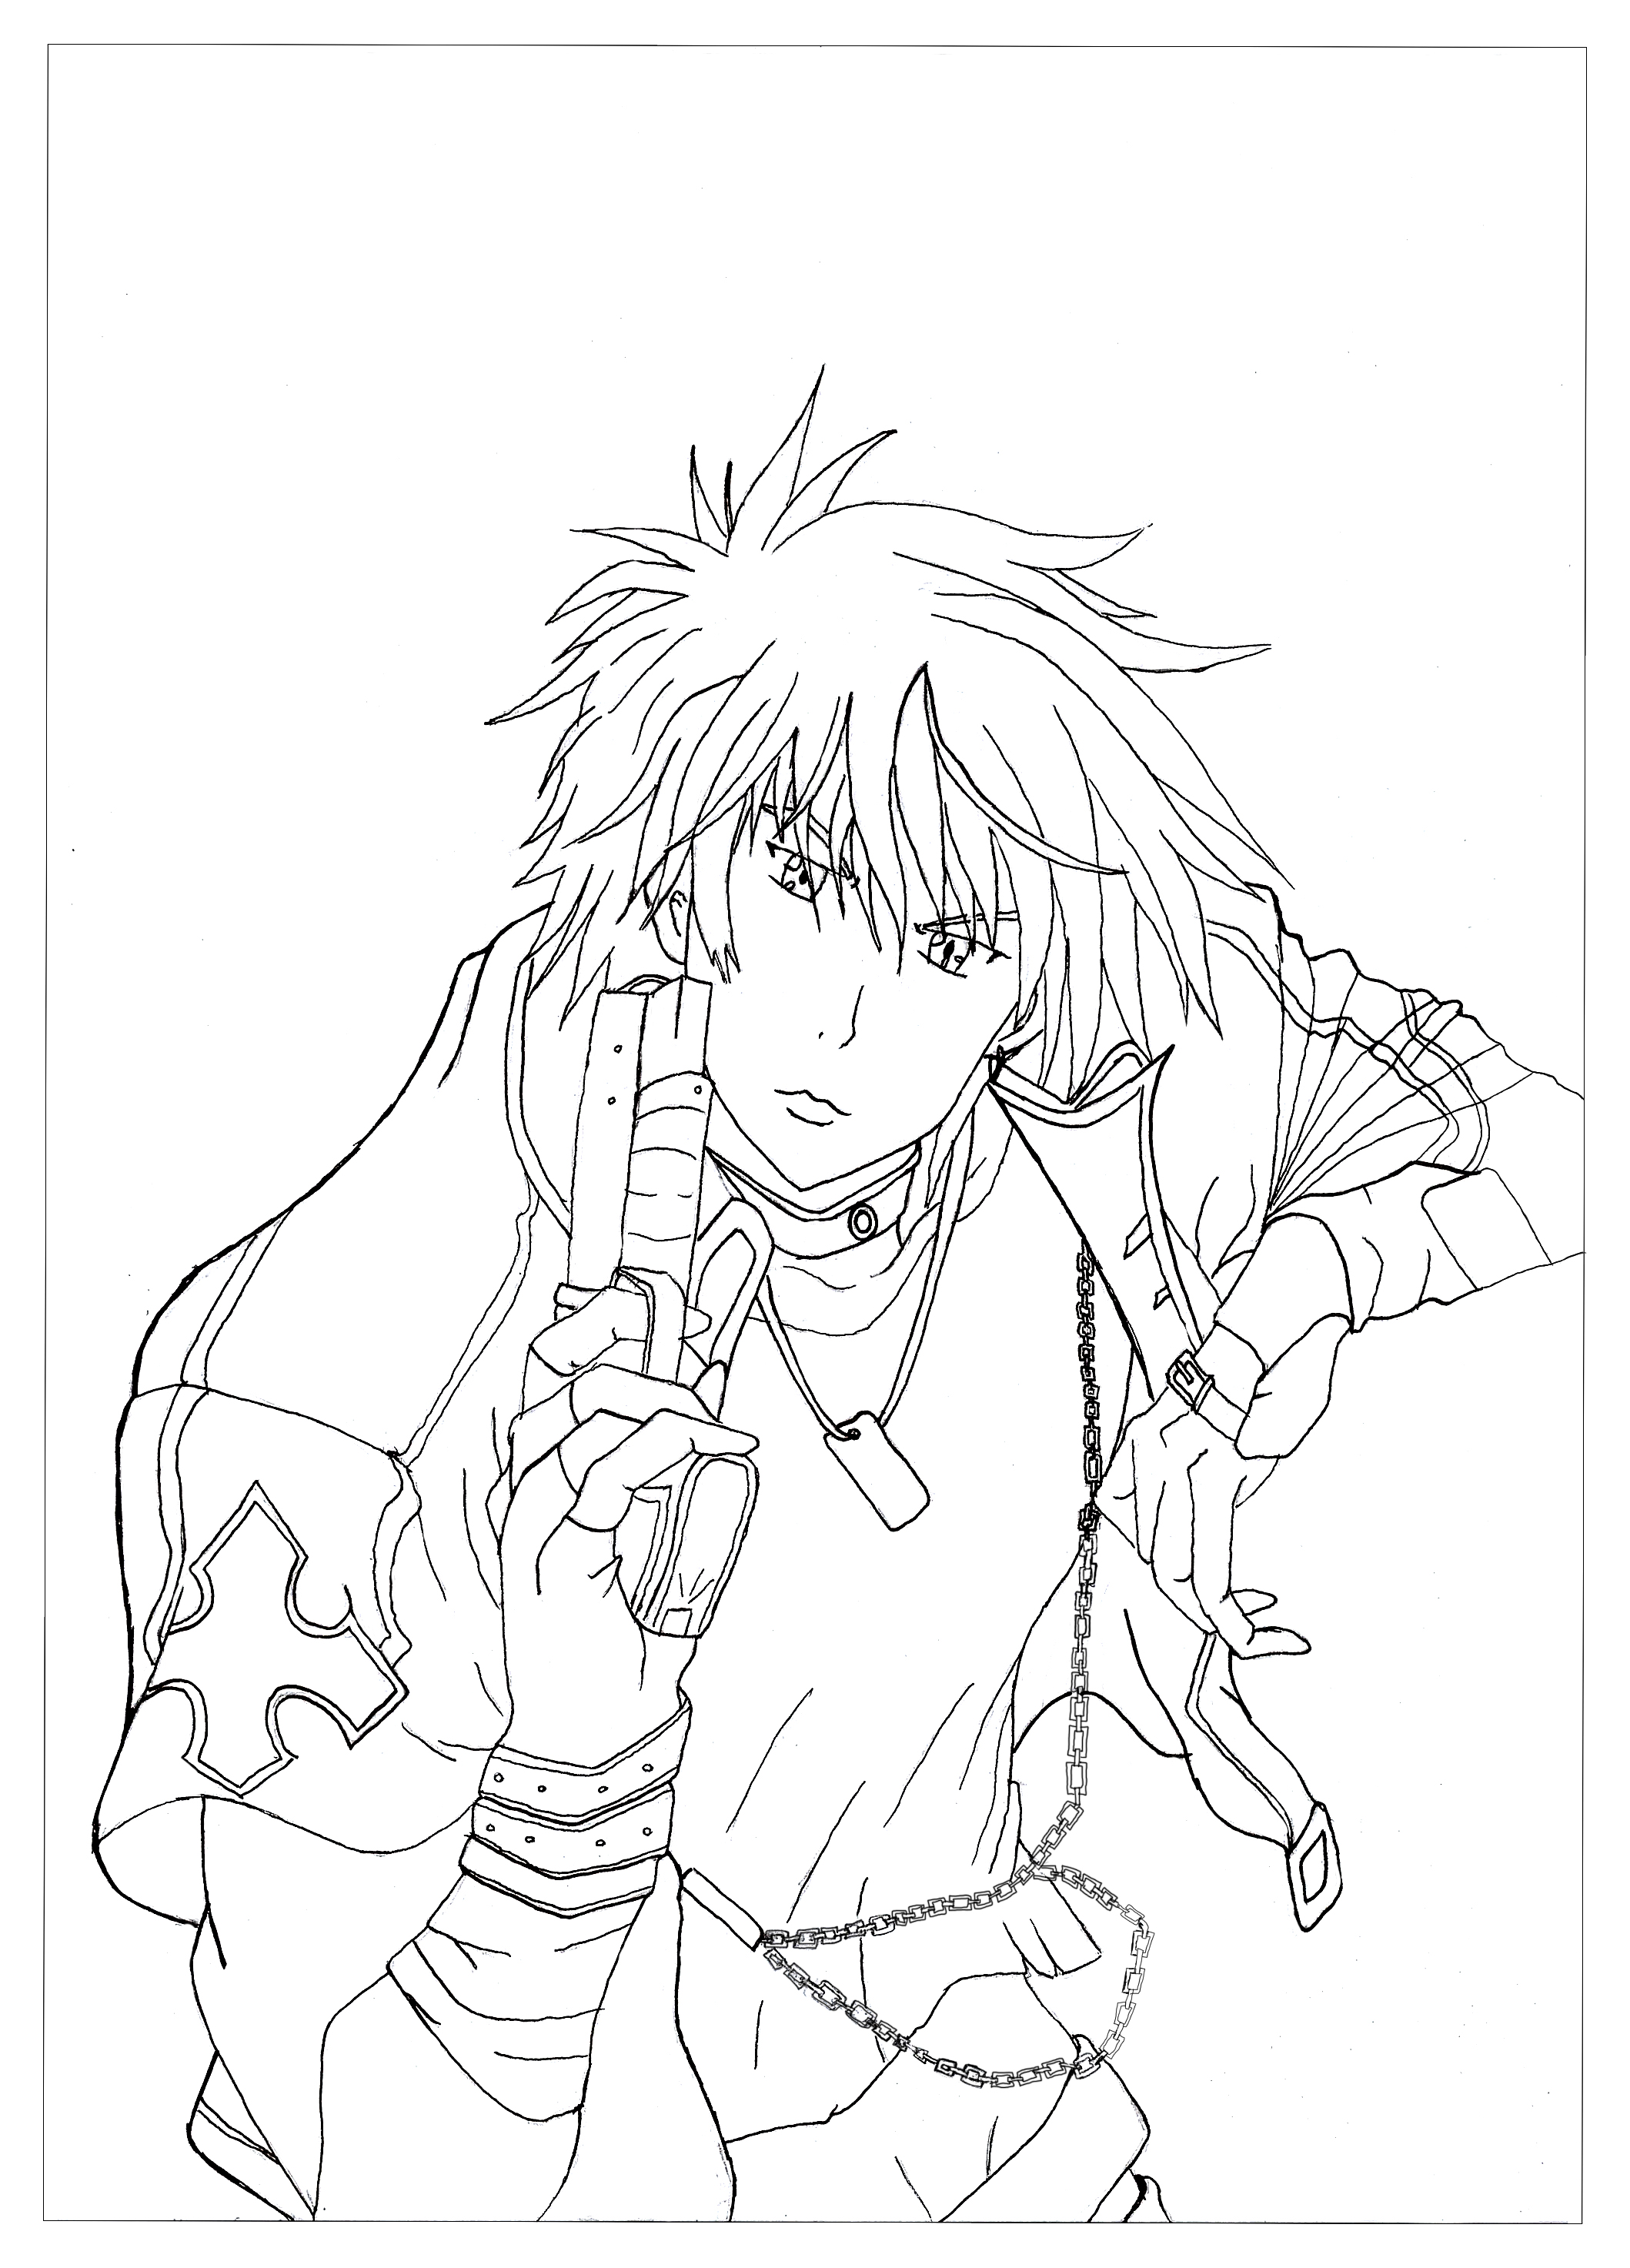 Voici un coloriage de Rayne. C'est un personnage du manga Neo Angelique Abyss. Il a pour rôle de purifier les mauvais esprits avec son arme.